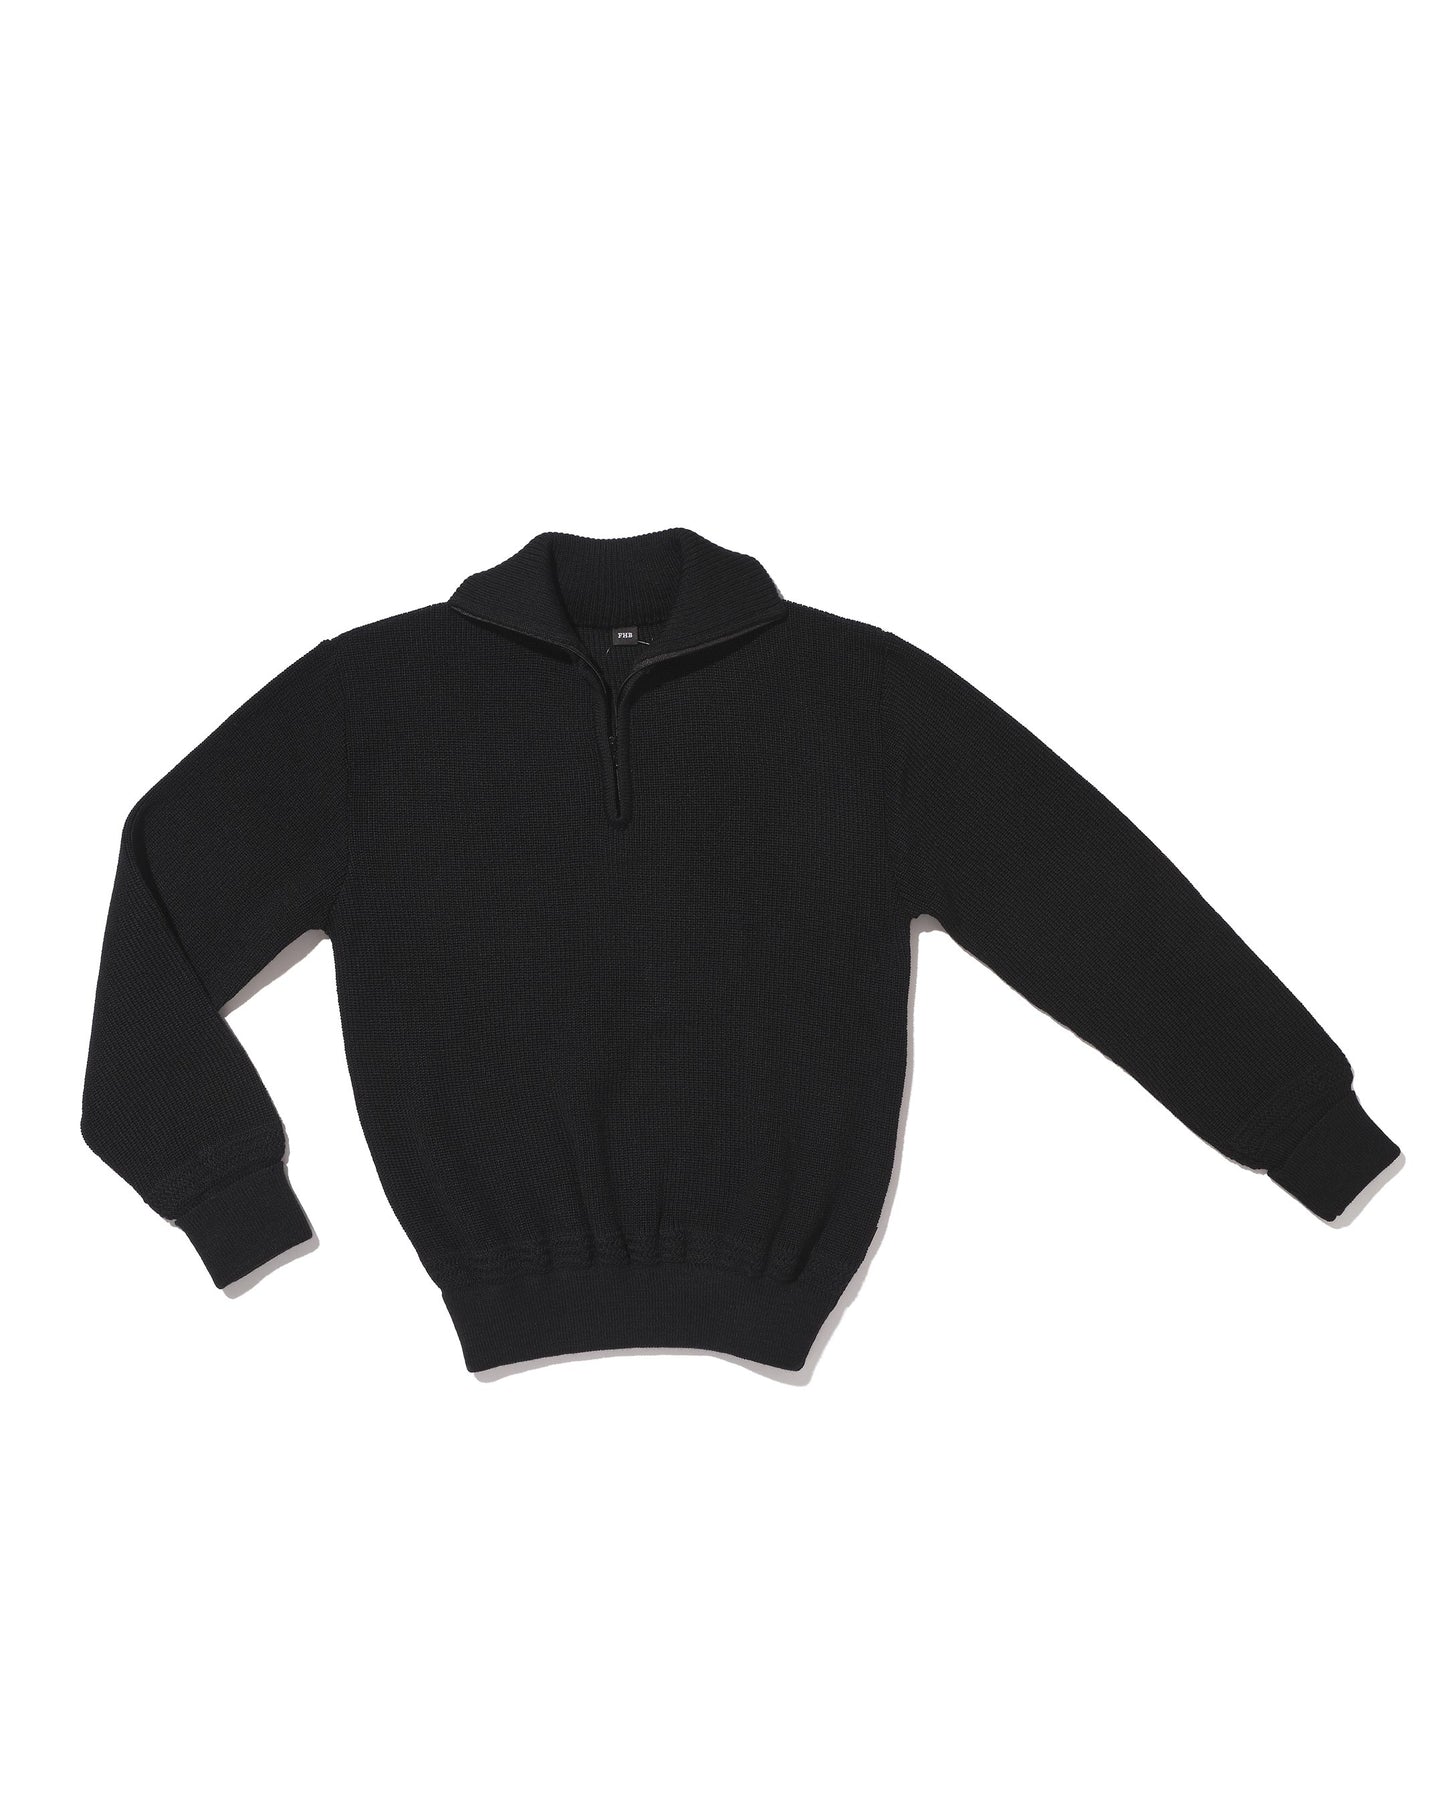 Black 80% wool trucker sweater